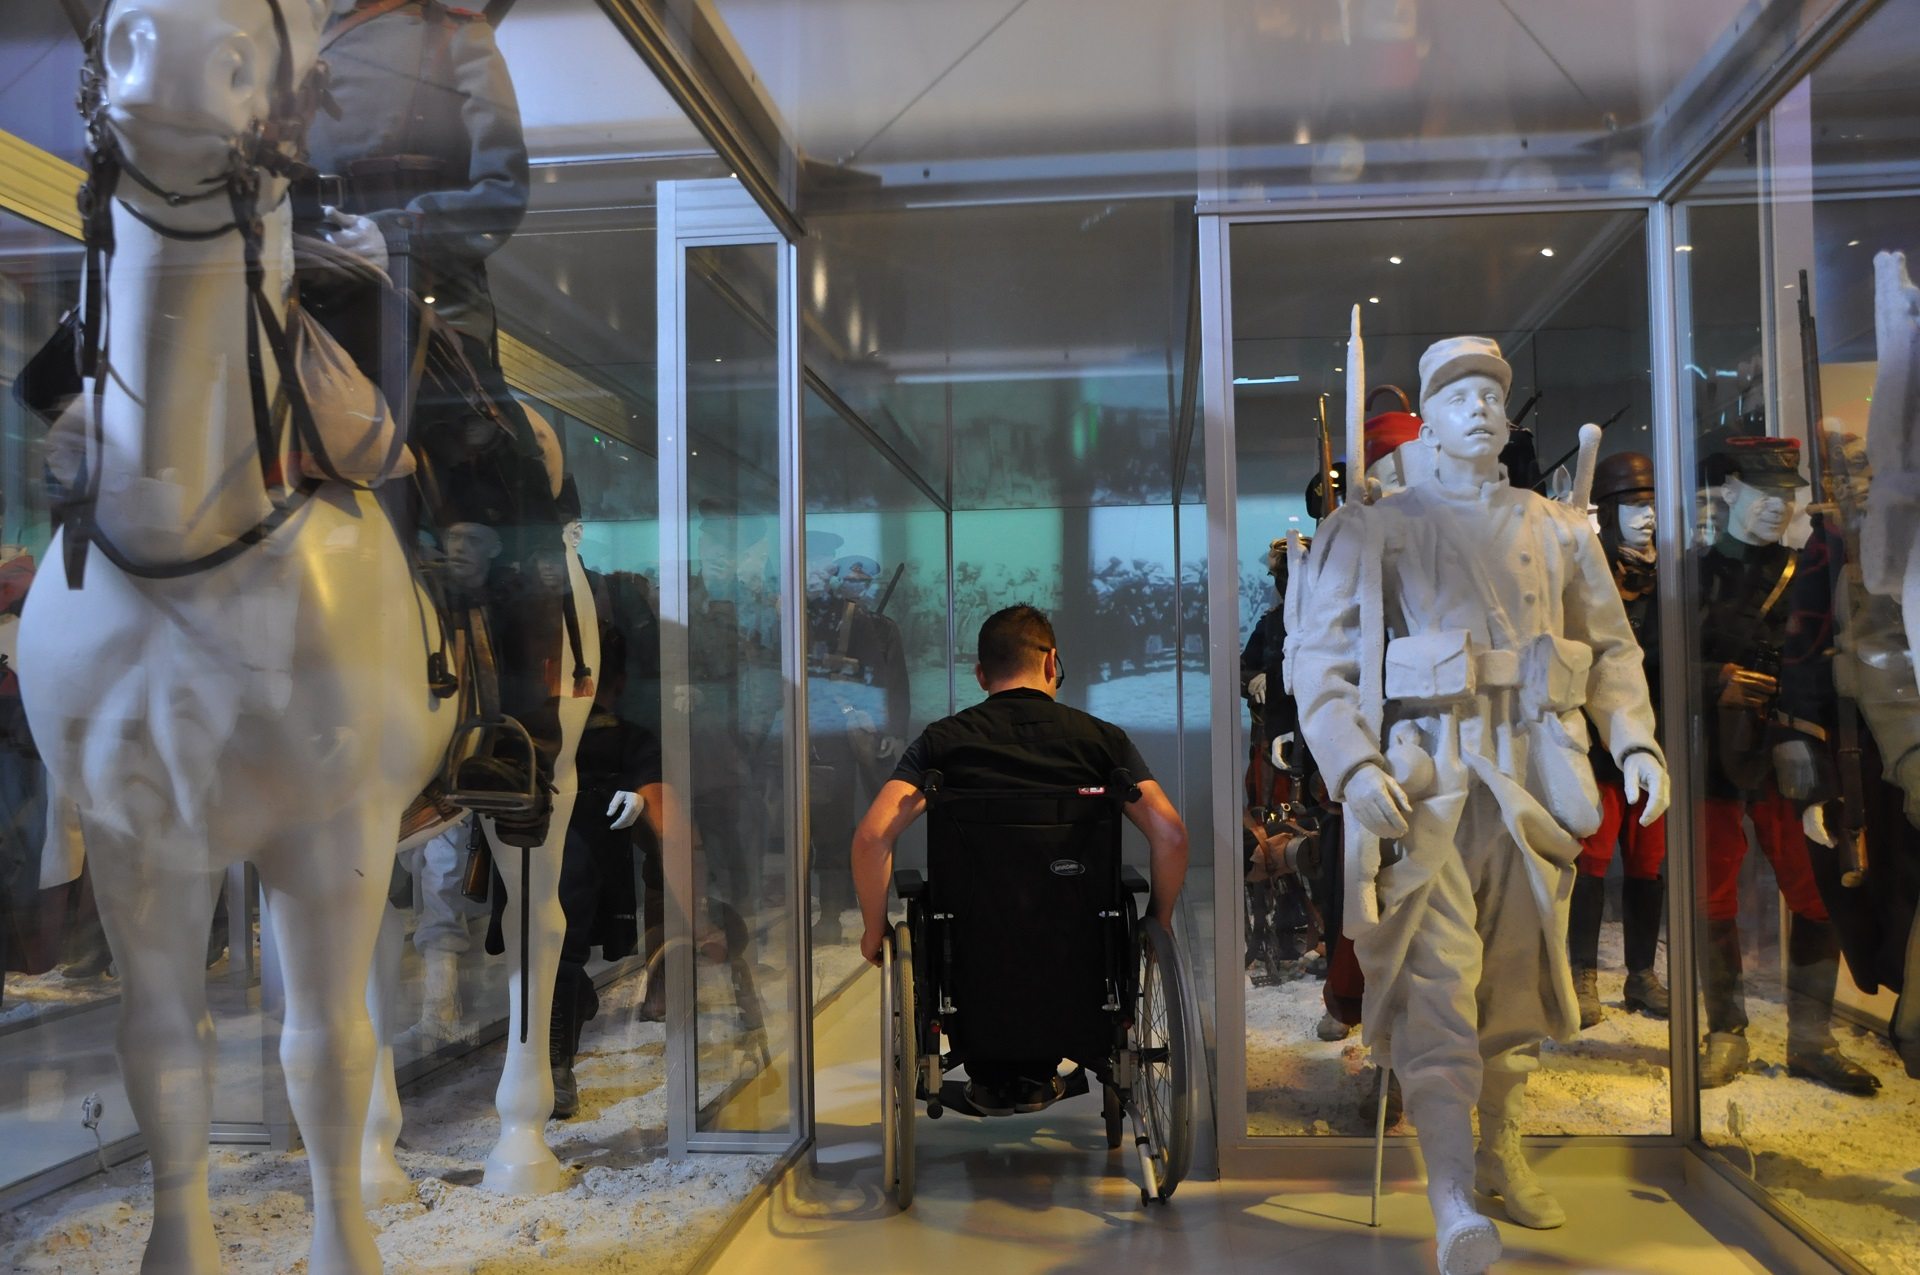 visiteur en fauteuil roulant entre deux rangées de statues de soldats de 1914 au Musée de la Grande Guerre à Meaux